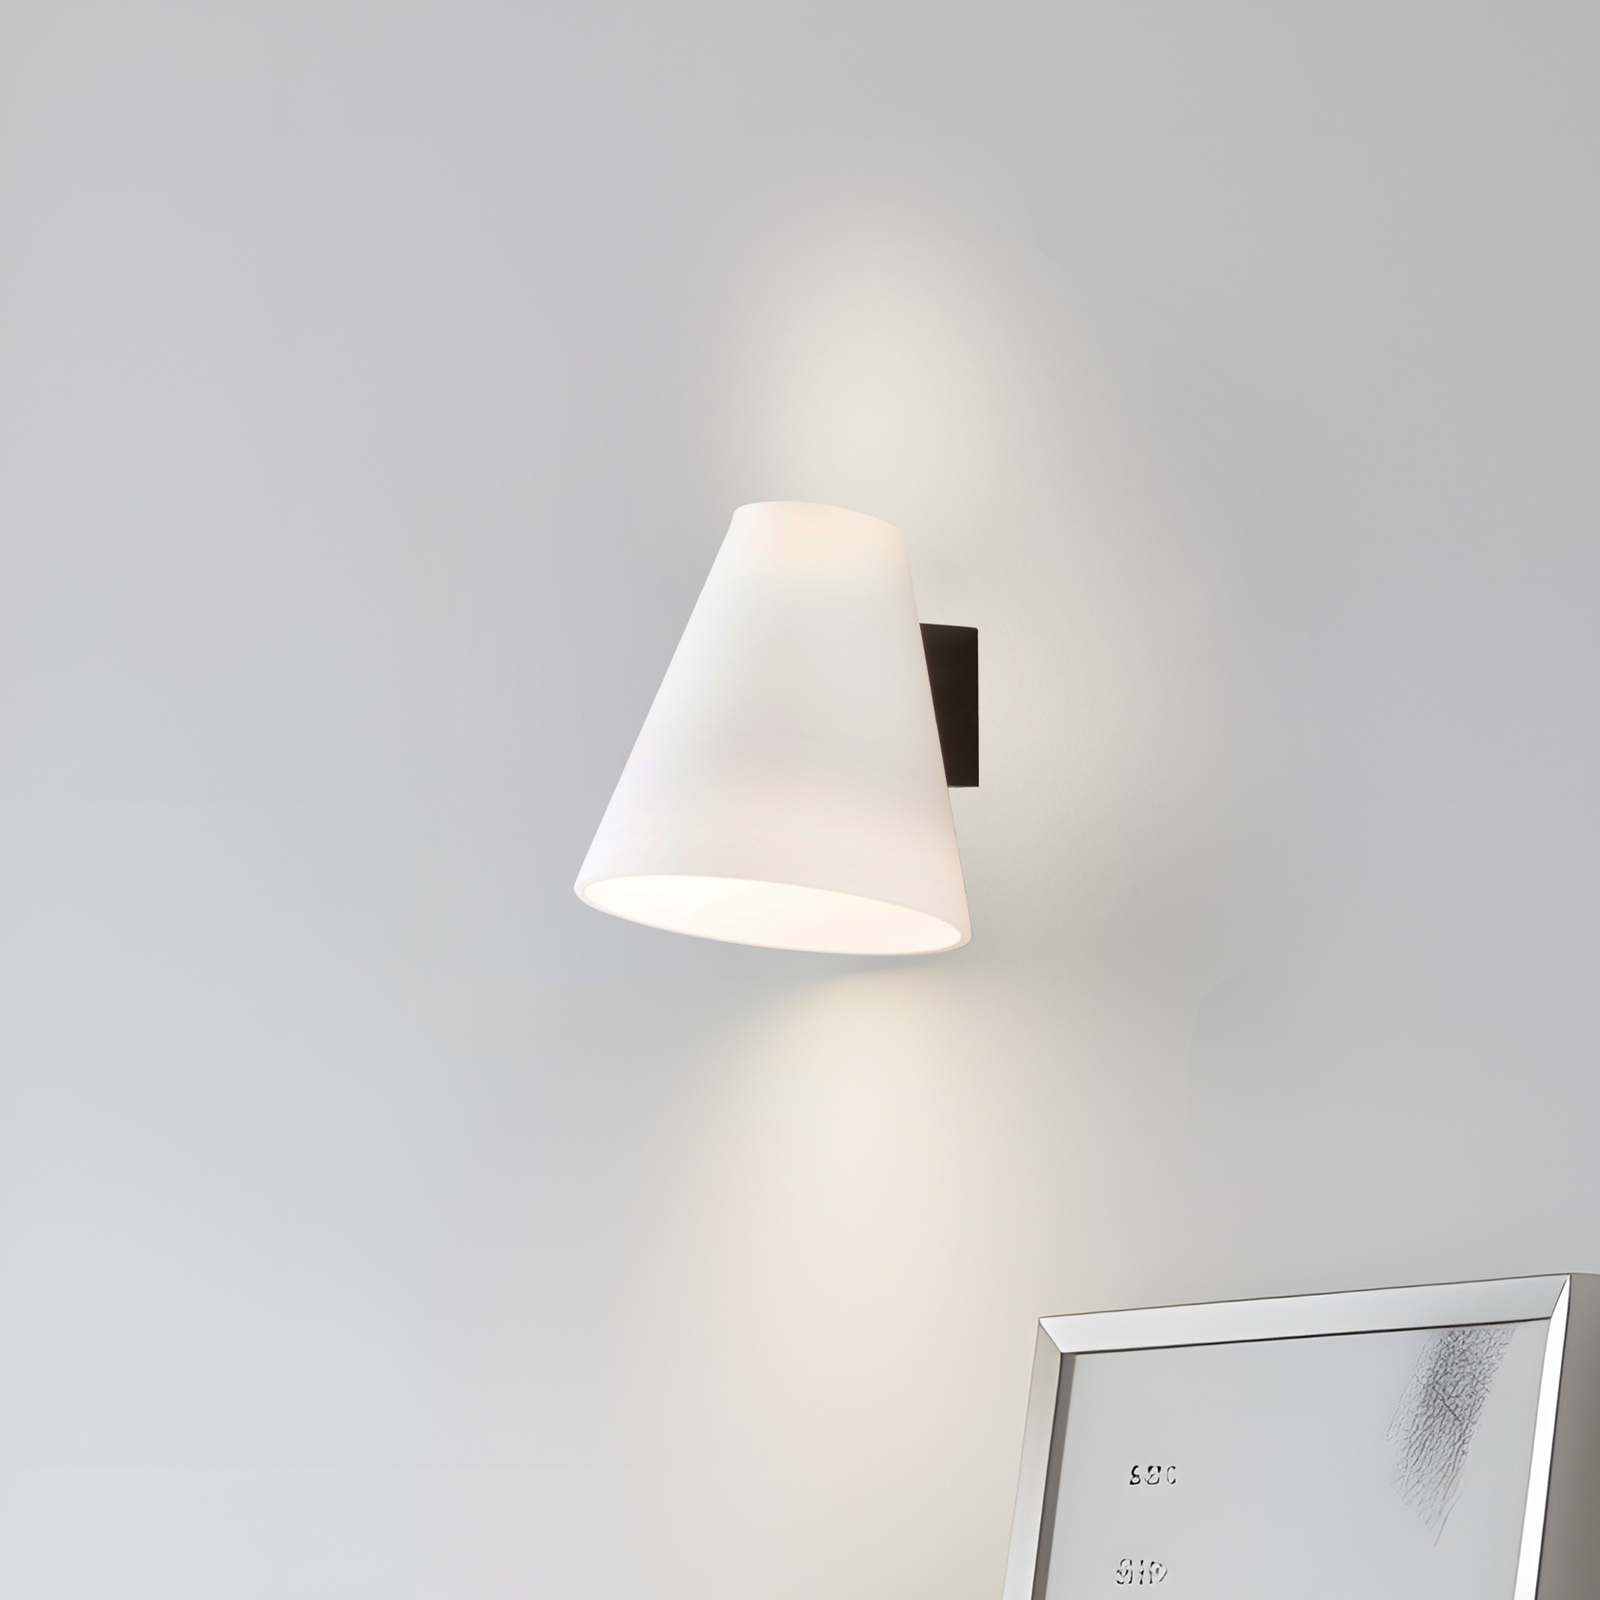 Lucande sienas lampa Timido, balta/melna, stikls, 16,5 cm augsta